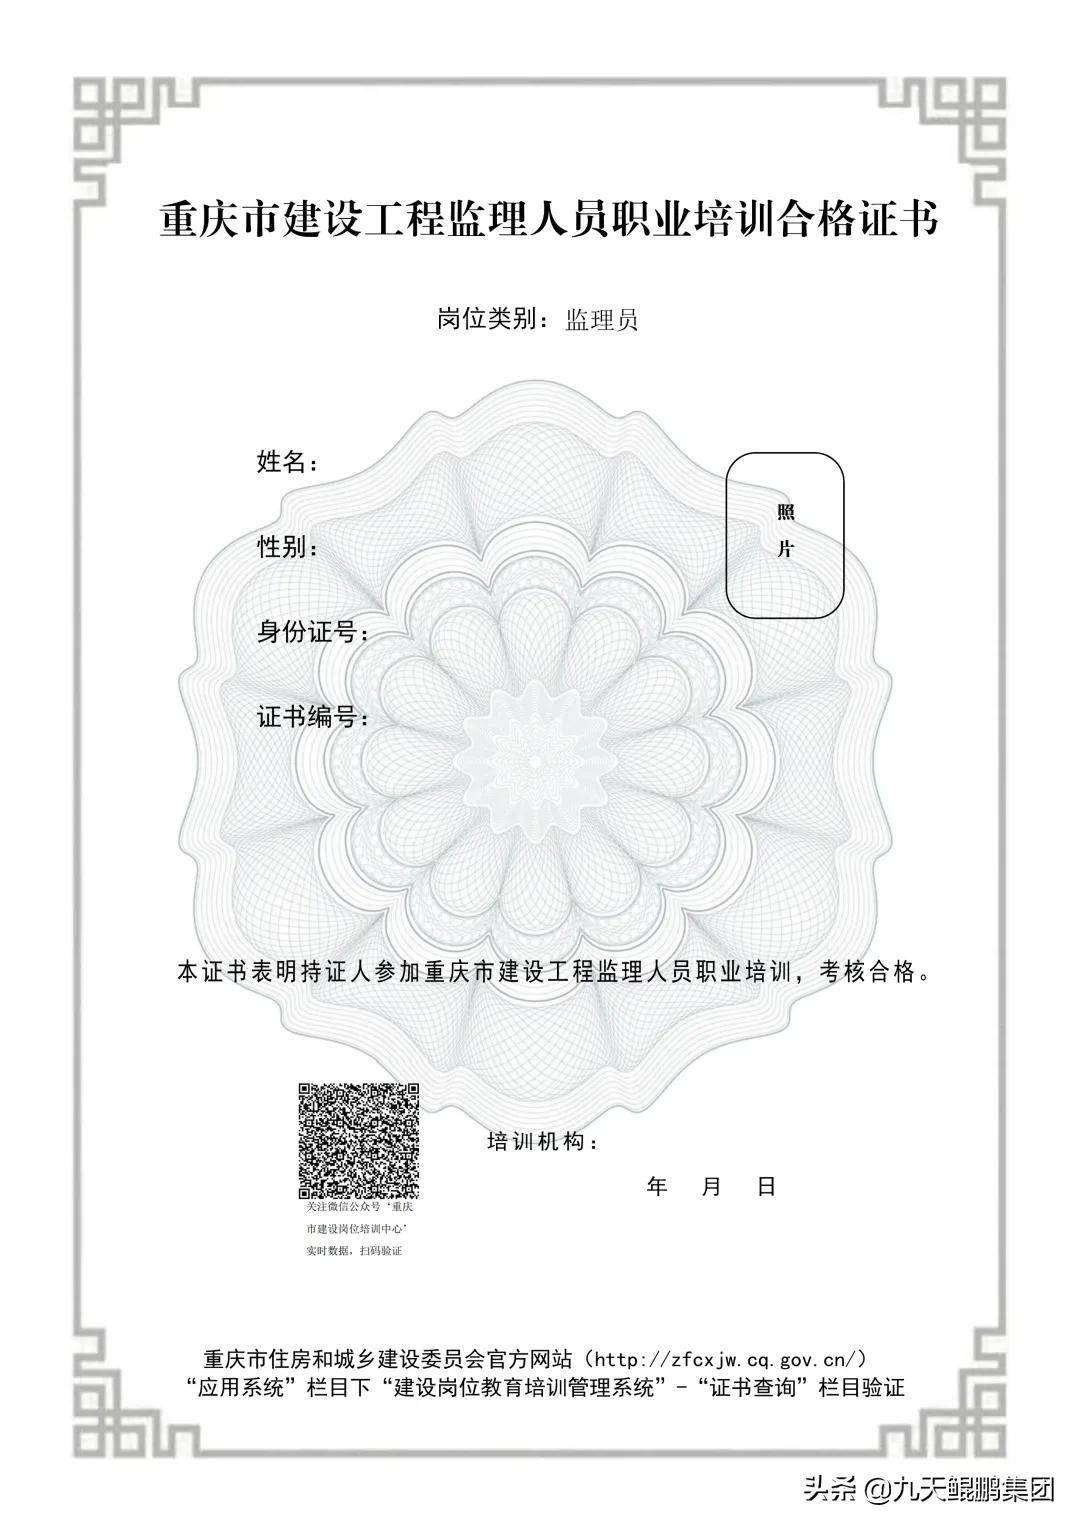 重庆:监理工程师/监理员岗位证书将换监理人员职业培训合格证书